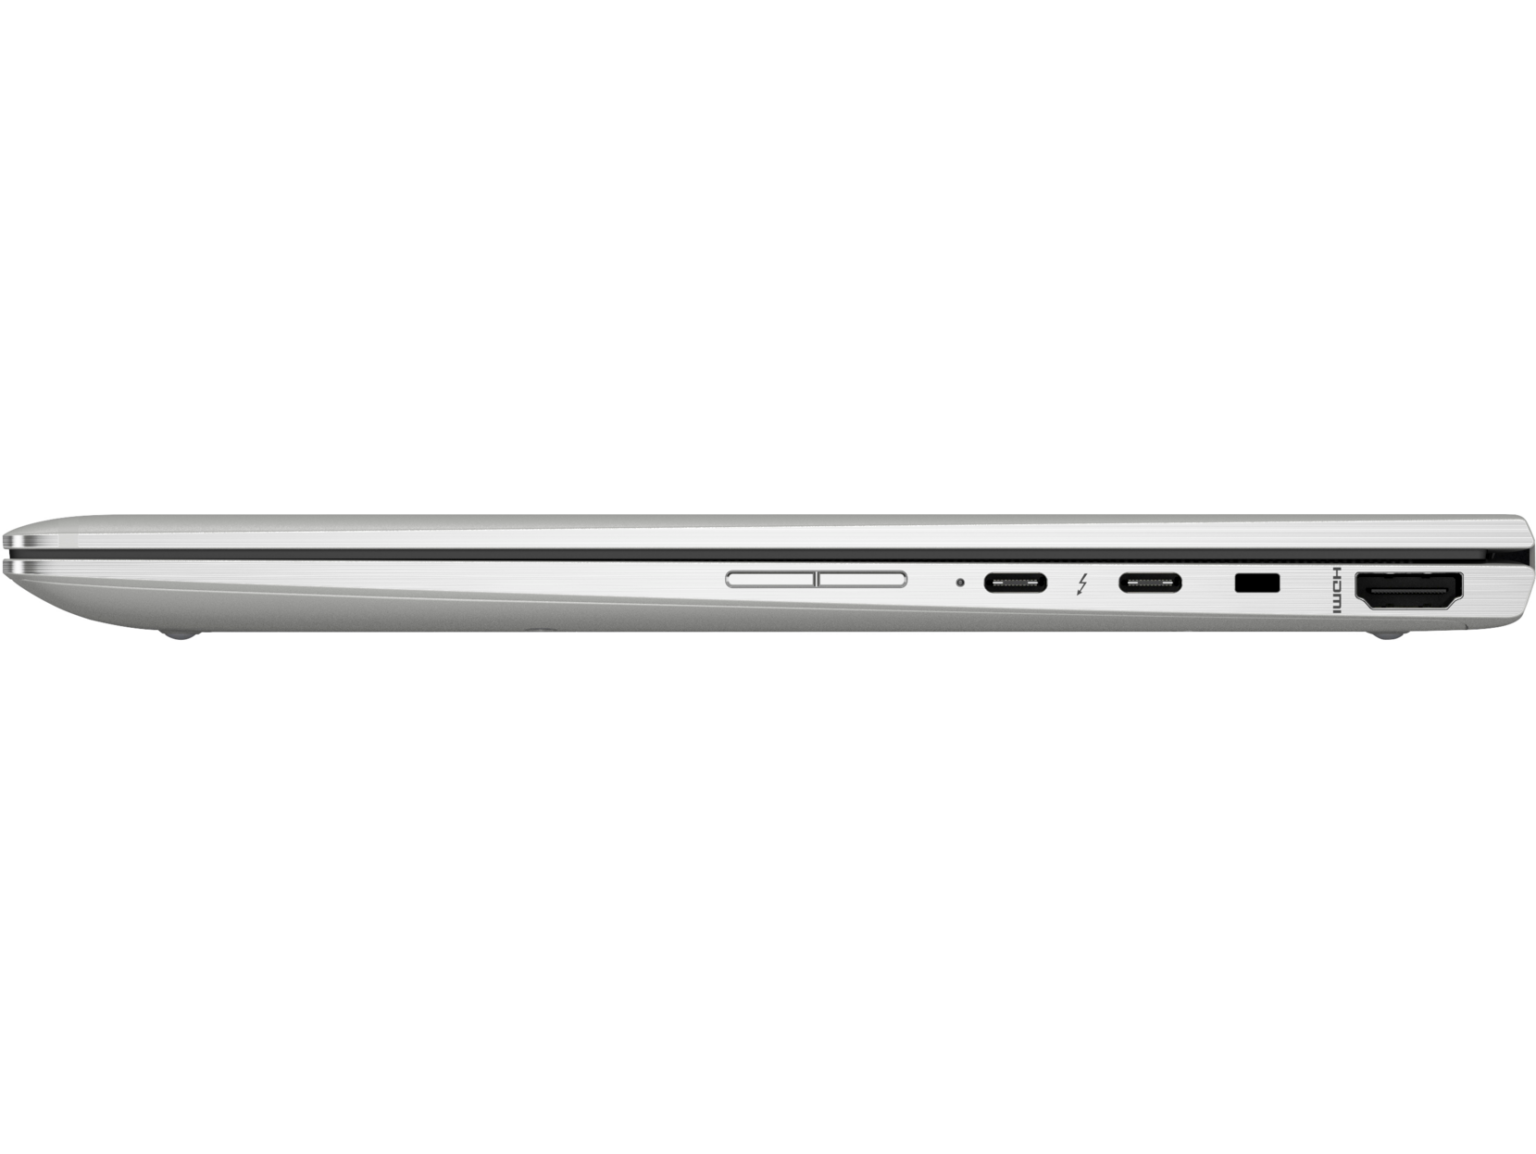 HP EliteBook X360 1030 G3